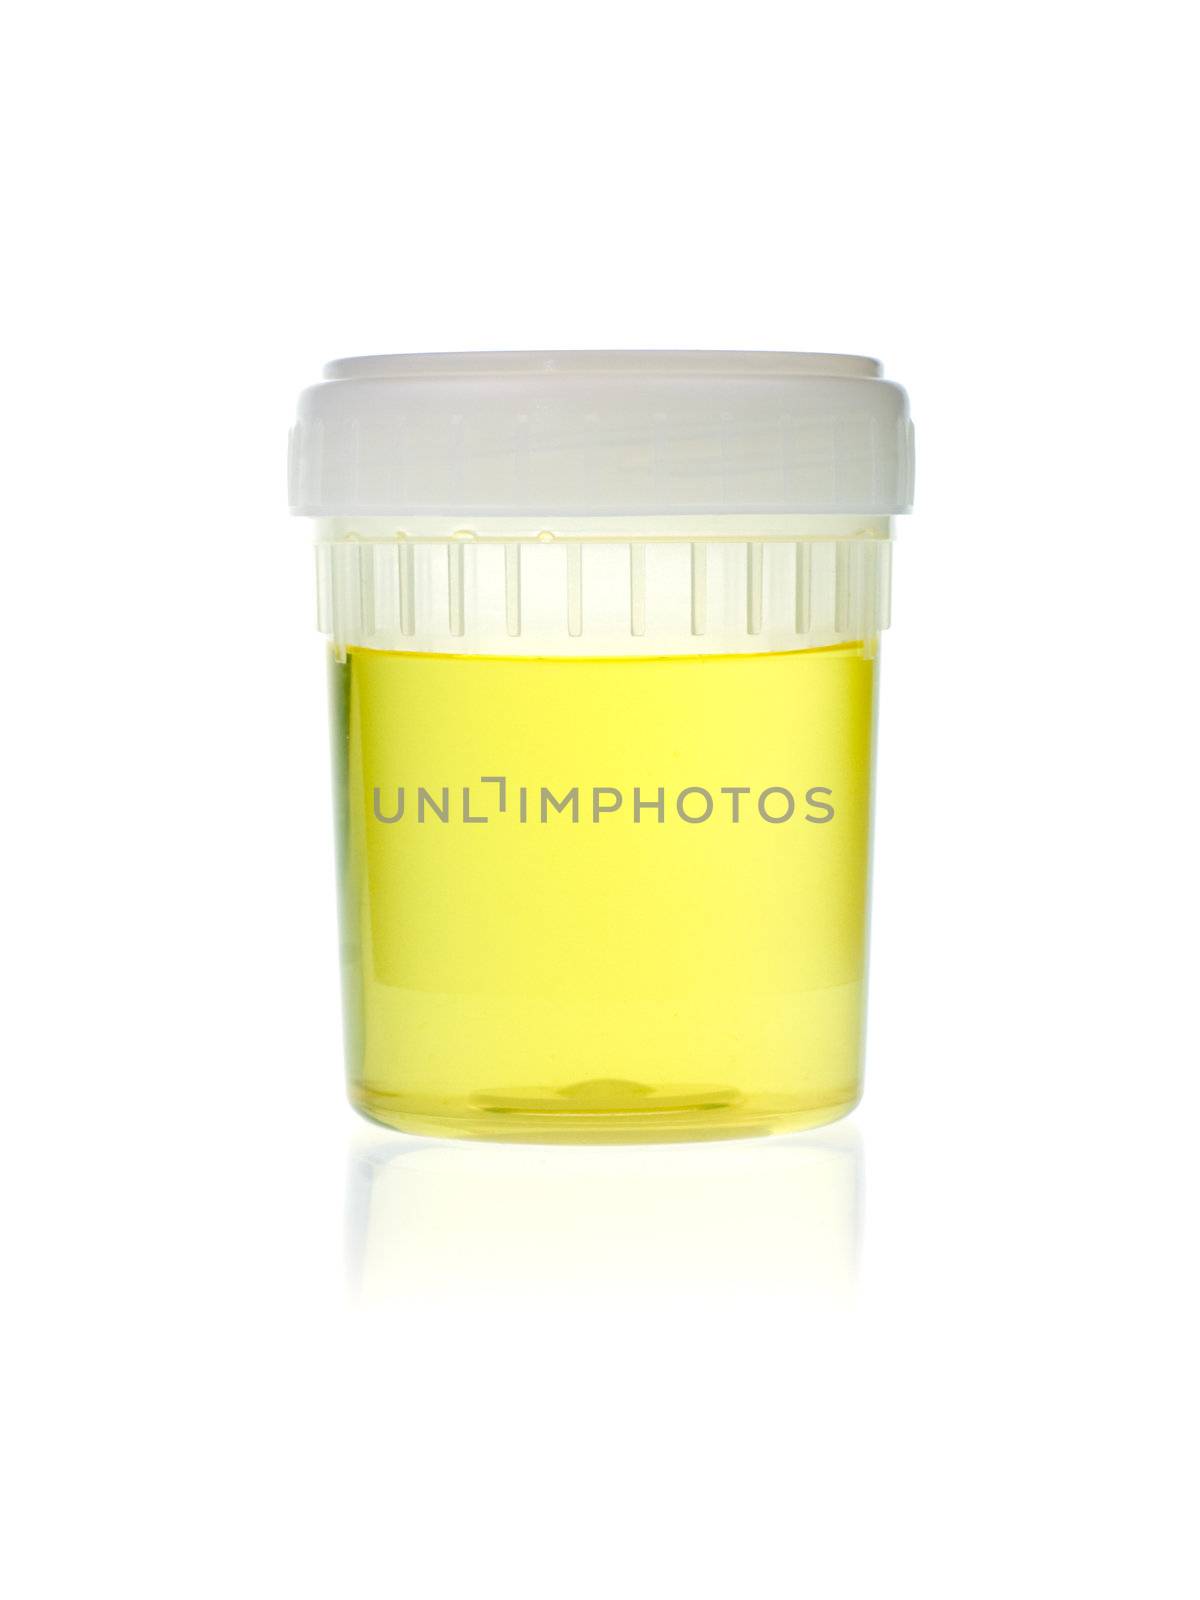 Urine analysis by naumoid